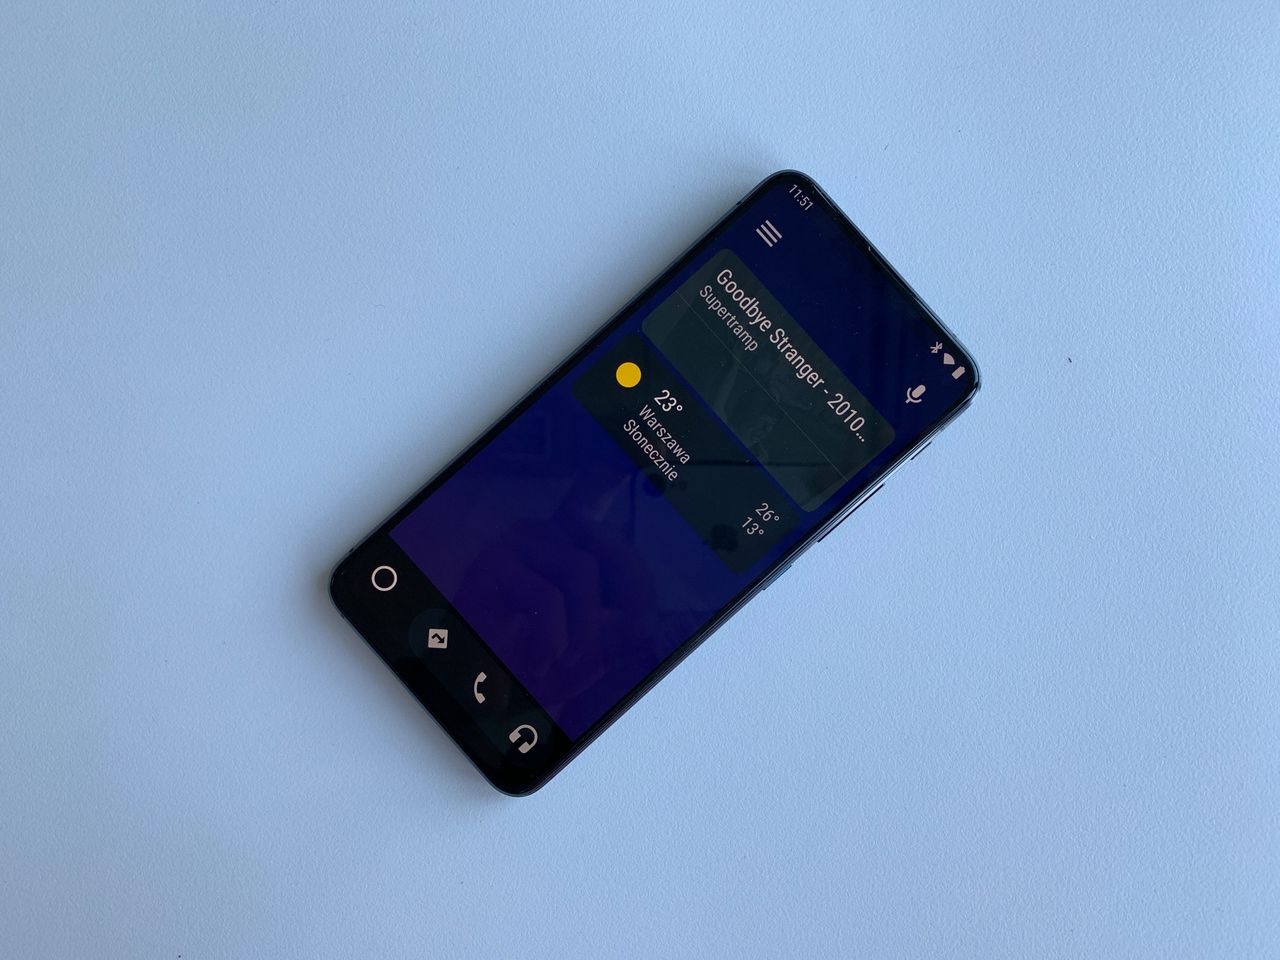 Android Auto for Phone Screen - Google zapowiada aplikację dla kierowców